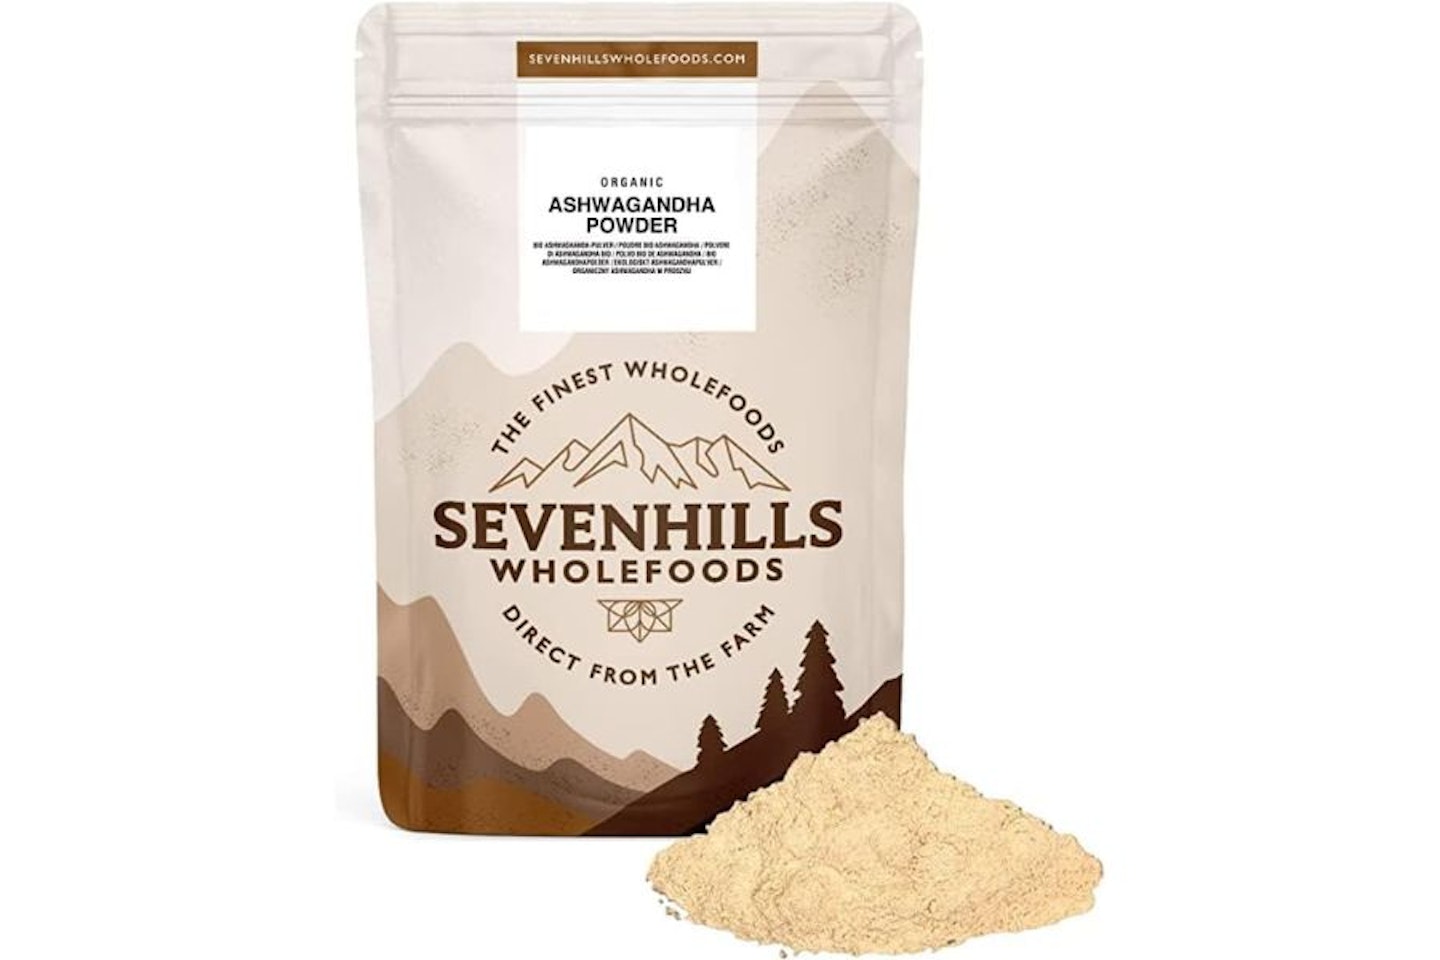 Sevenhills Wholefoods Organic Raw Ashwagandha Powder - best powdered ashwagandha